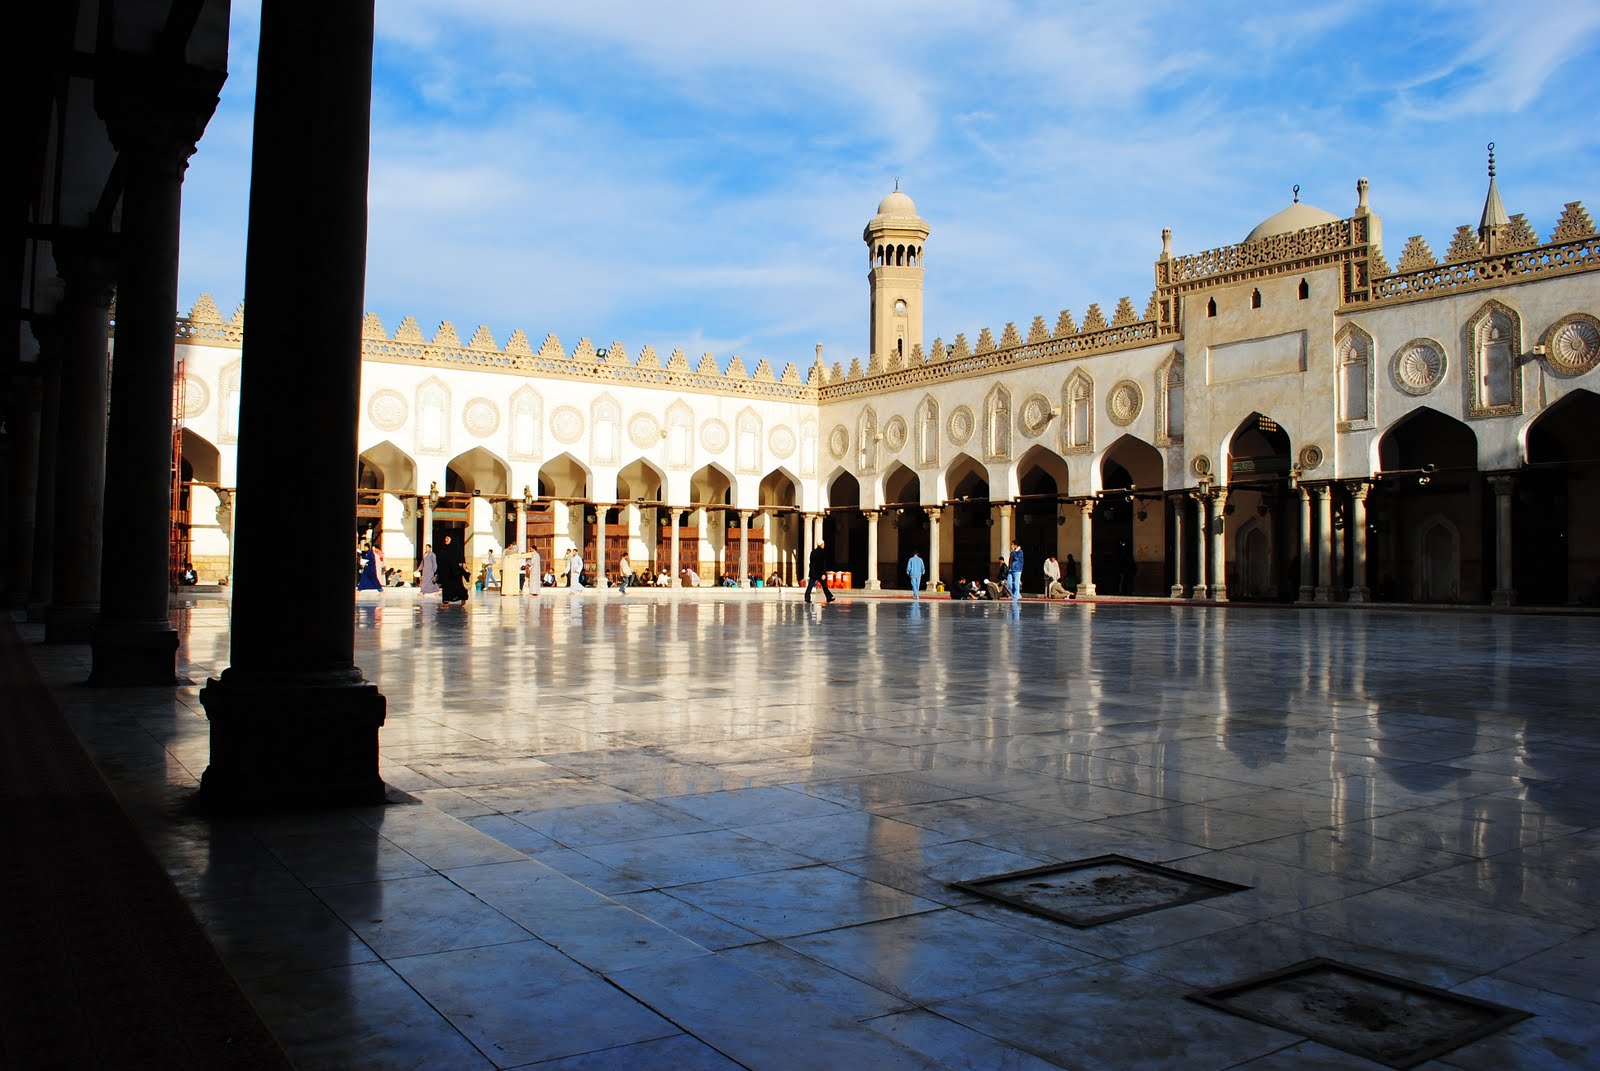 Al university. Аль Азхар Египет. Мечеть Аль-Азхар. Аль Азхар университет. Мечеть Аль-Азхар внутри.